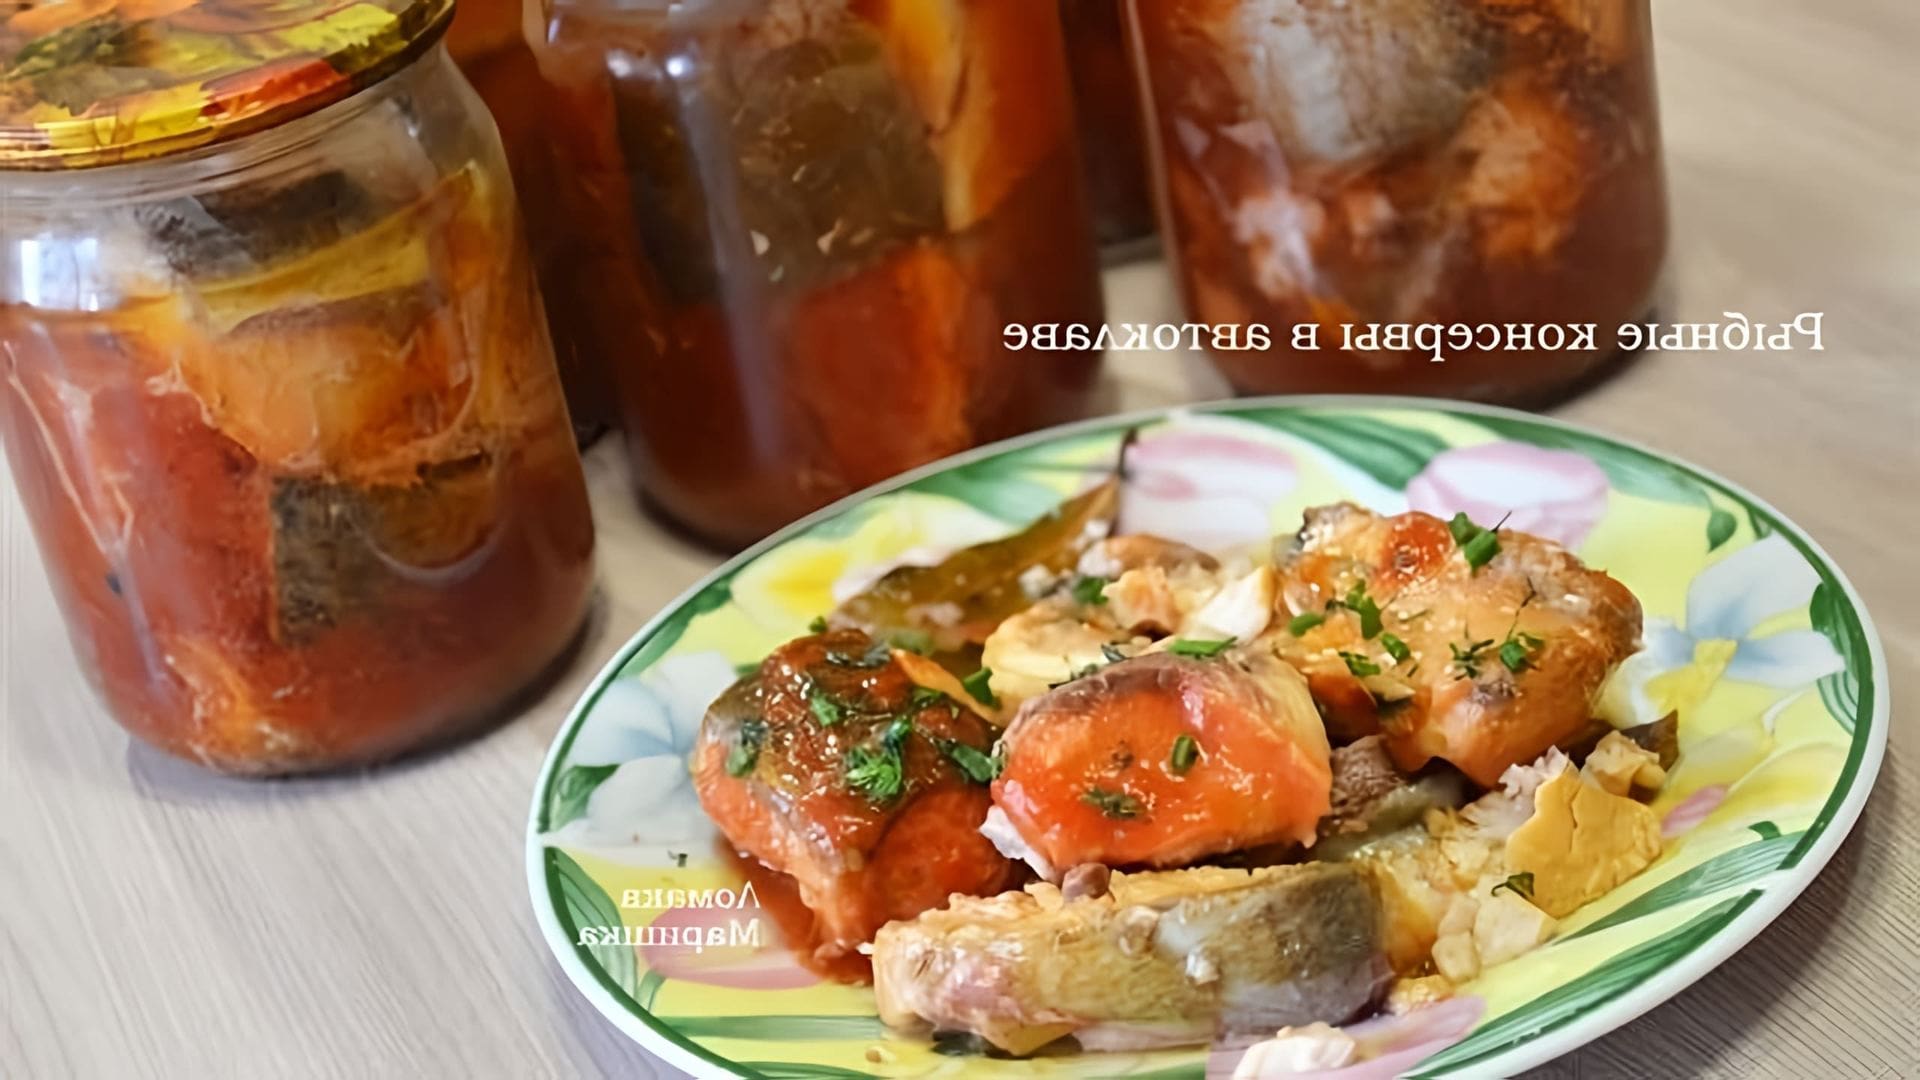 Видео как приготовить консервированную рыбу в томатном соусе с использованием скороварки